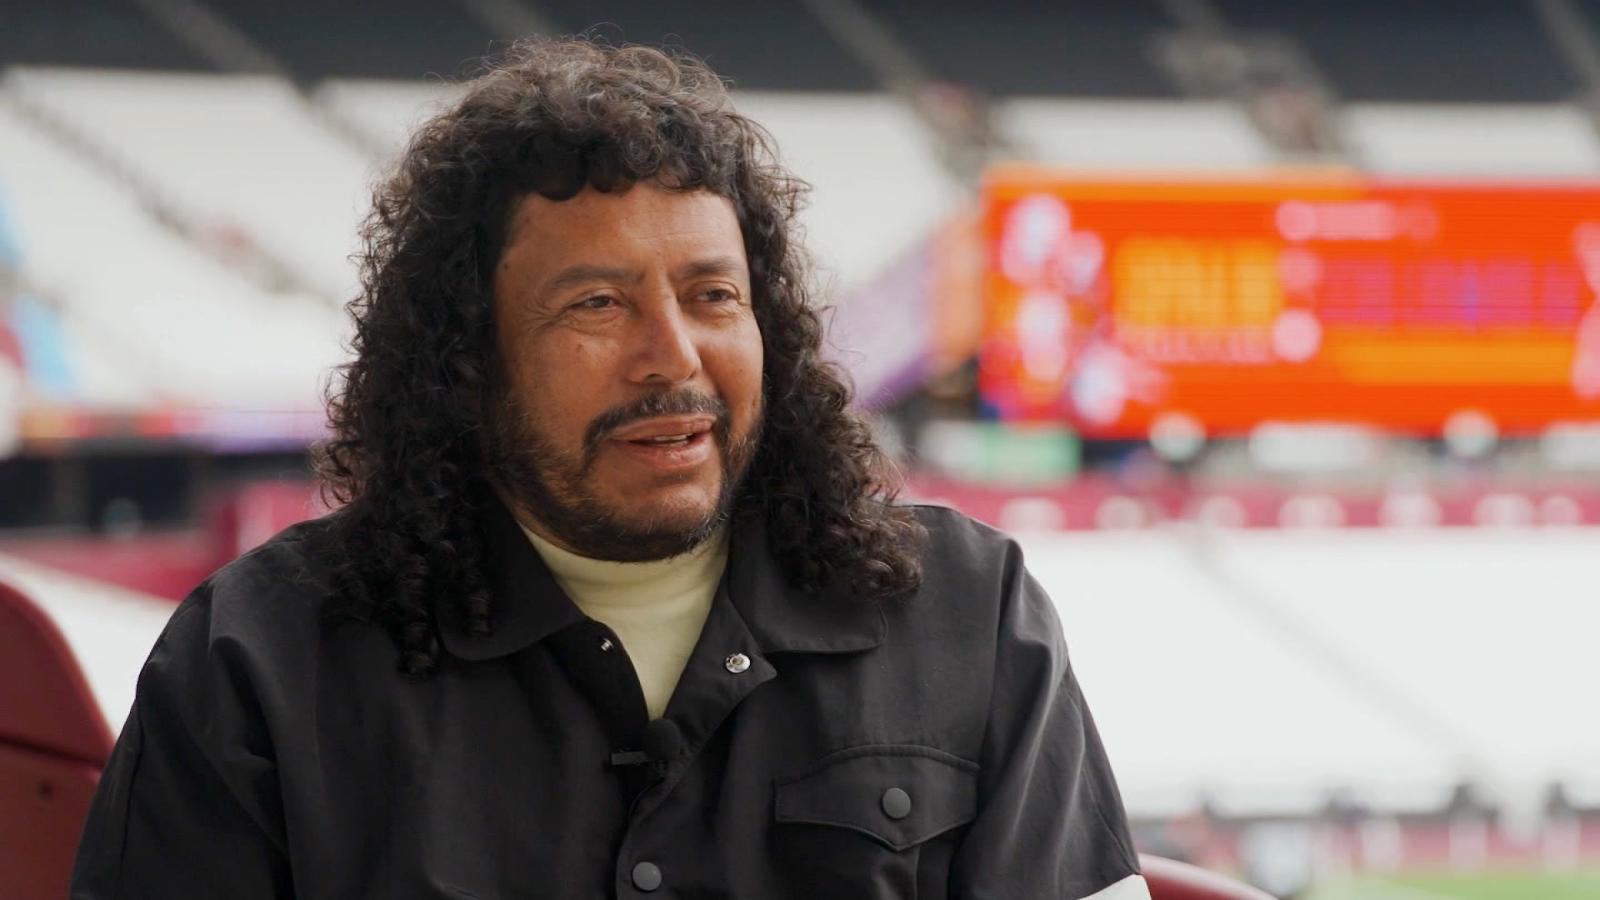 René Higuita recuerda entre risas las primeras reacciones a su
"escorpión" en Wembley